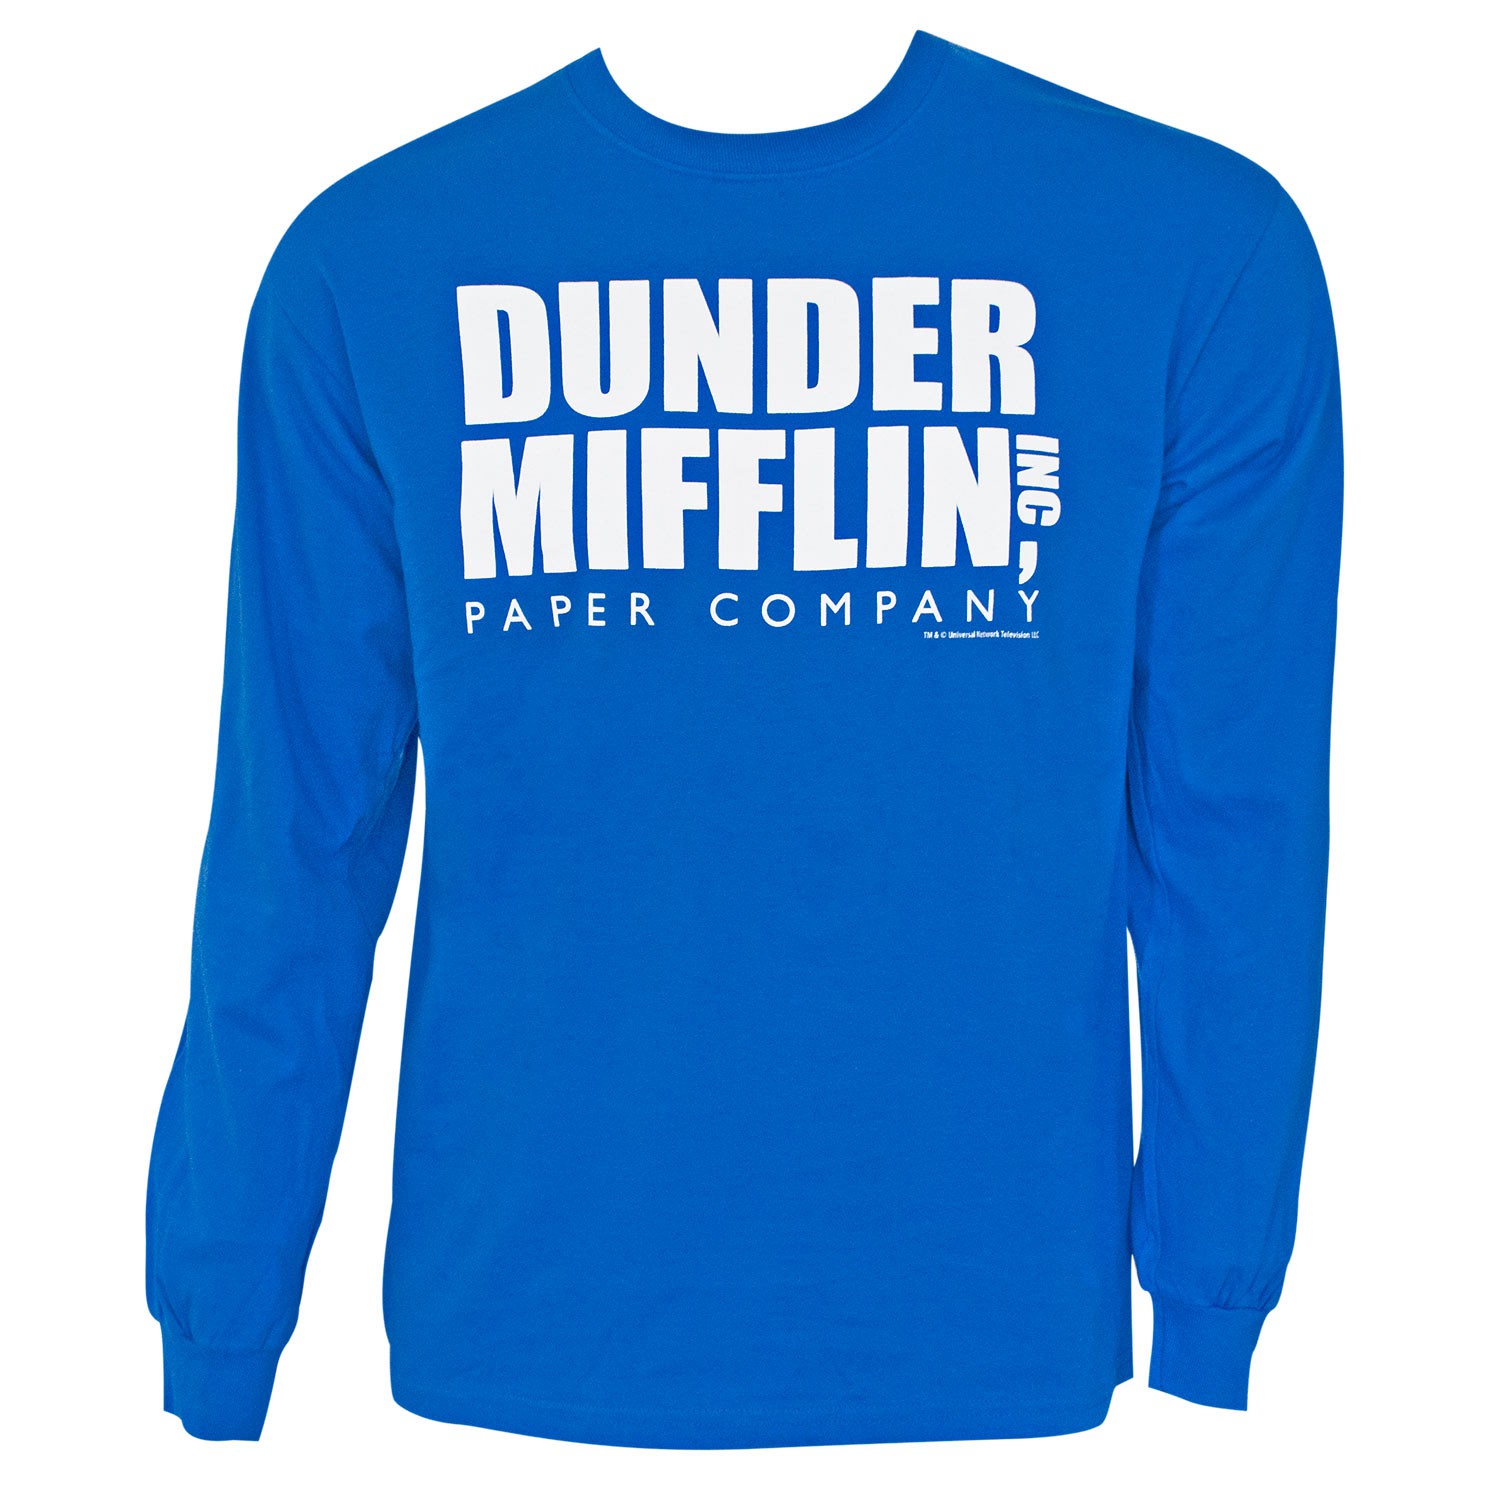 The Office Dunder Mifflin Long Sleeve Blue Tee Shirt